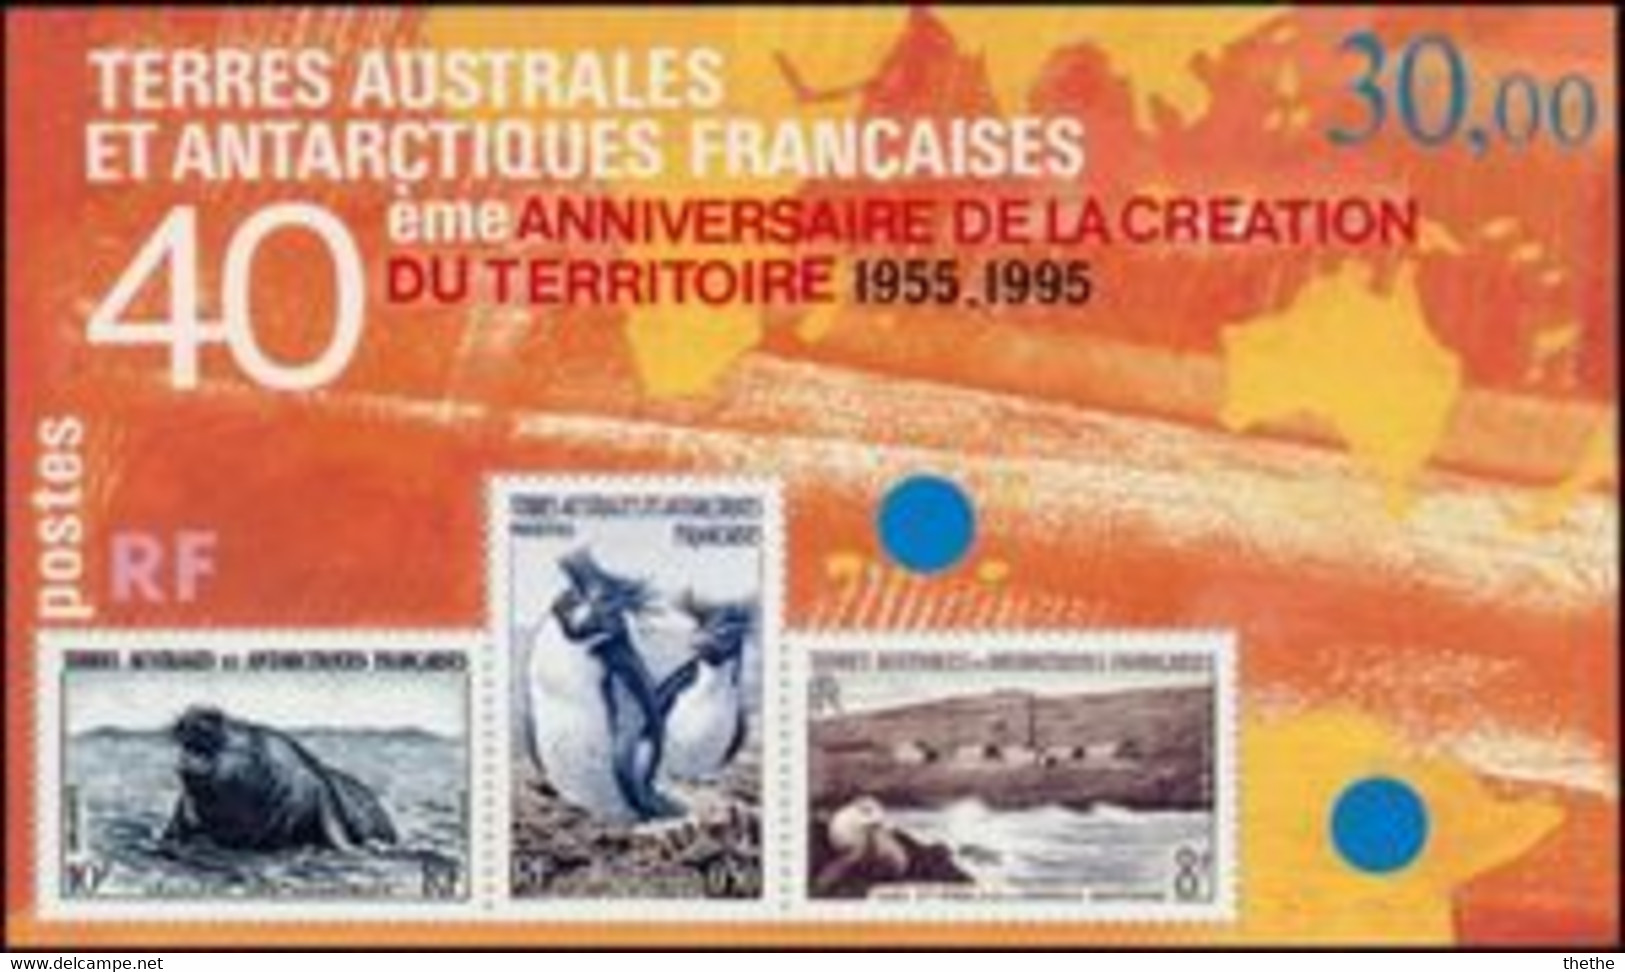 Terres Australes Et Antarctiques Françaises (TAAF) - 40ème Anniv. De La Création Du Territoire - Blocs-feuillets